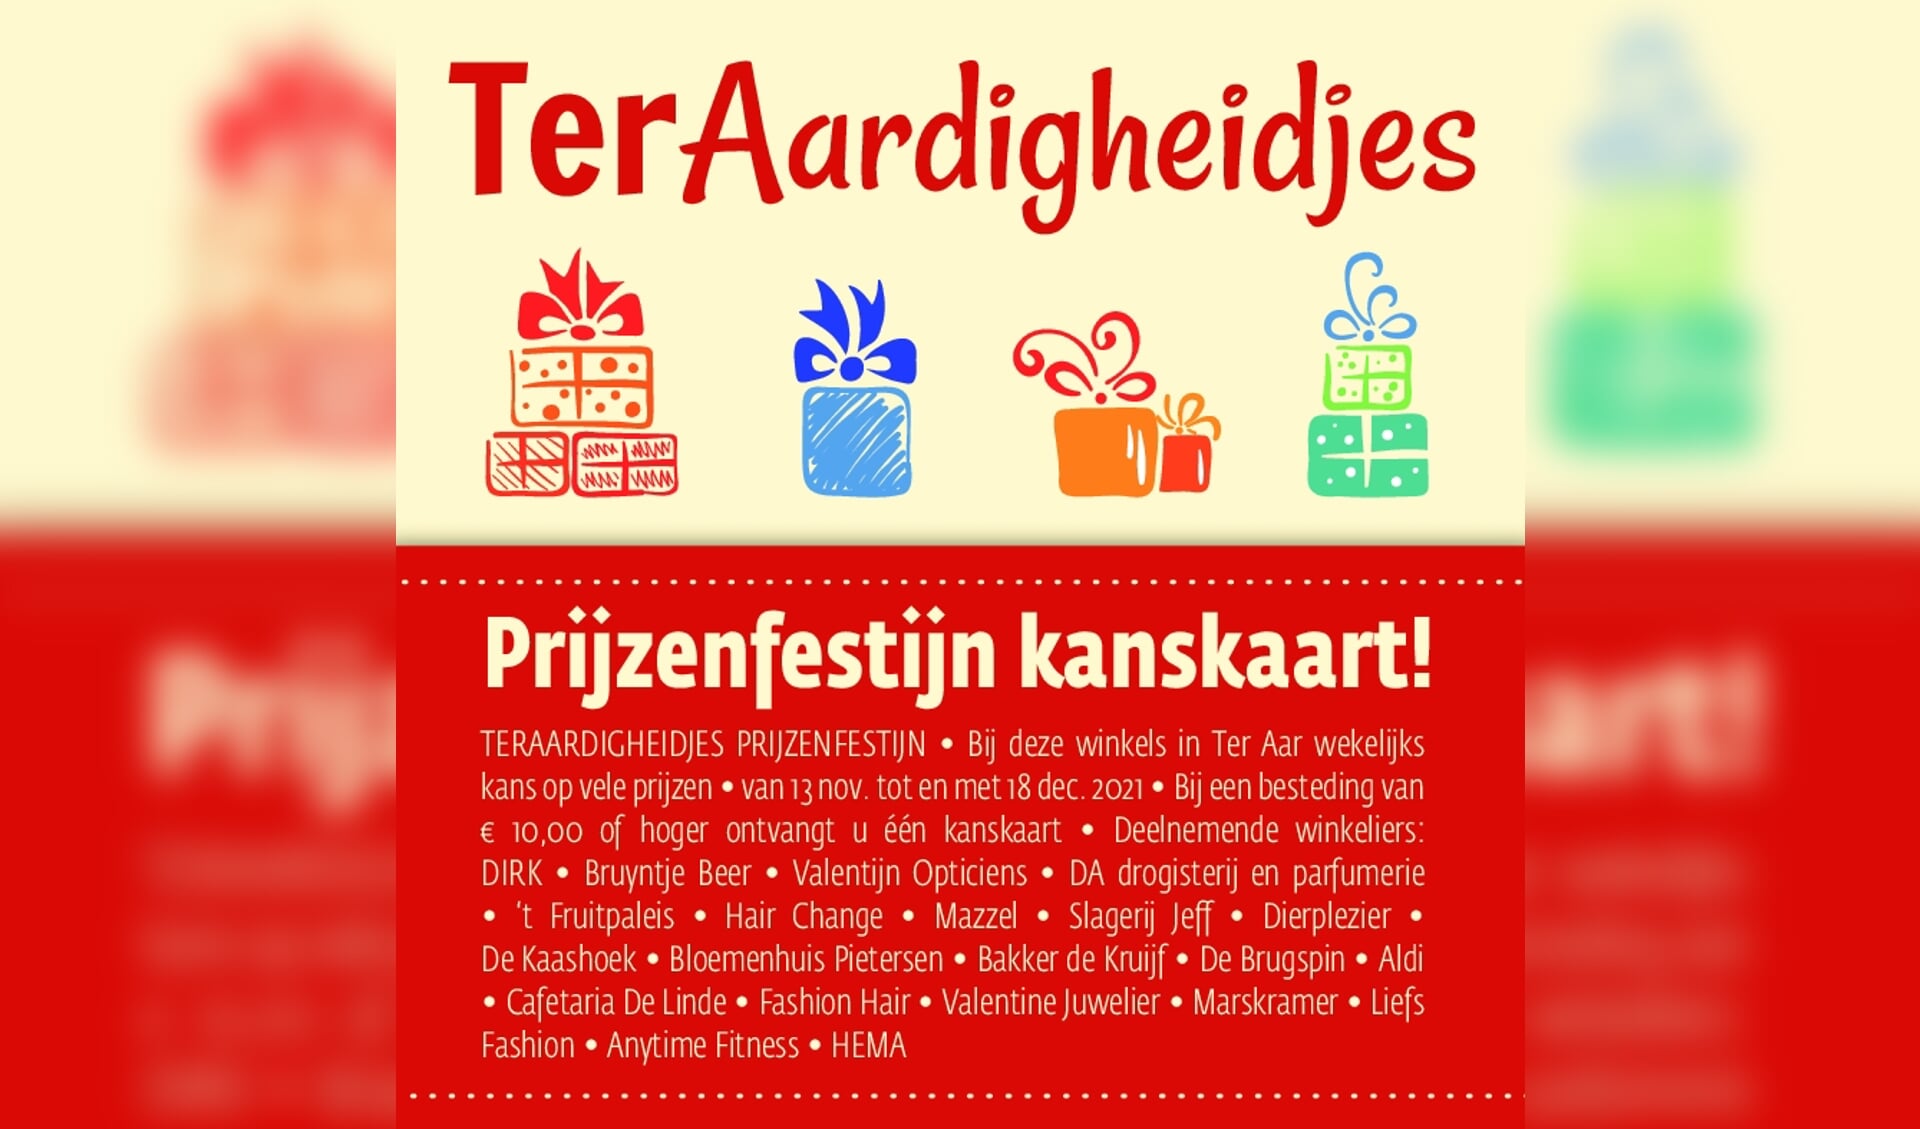 De 21 winkeliers van Winkelcentrum Ter Aar houden de komende weken het Ter Aardigheidjes prijzenfestijn.